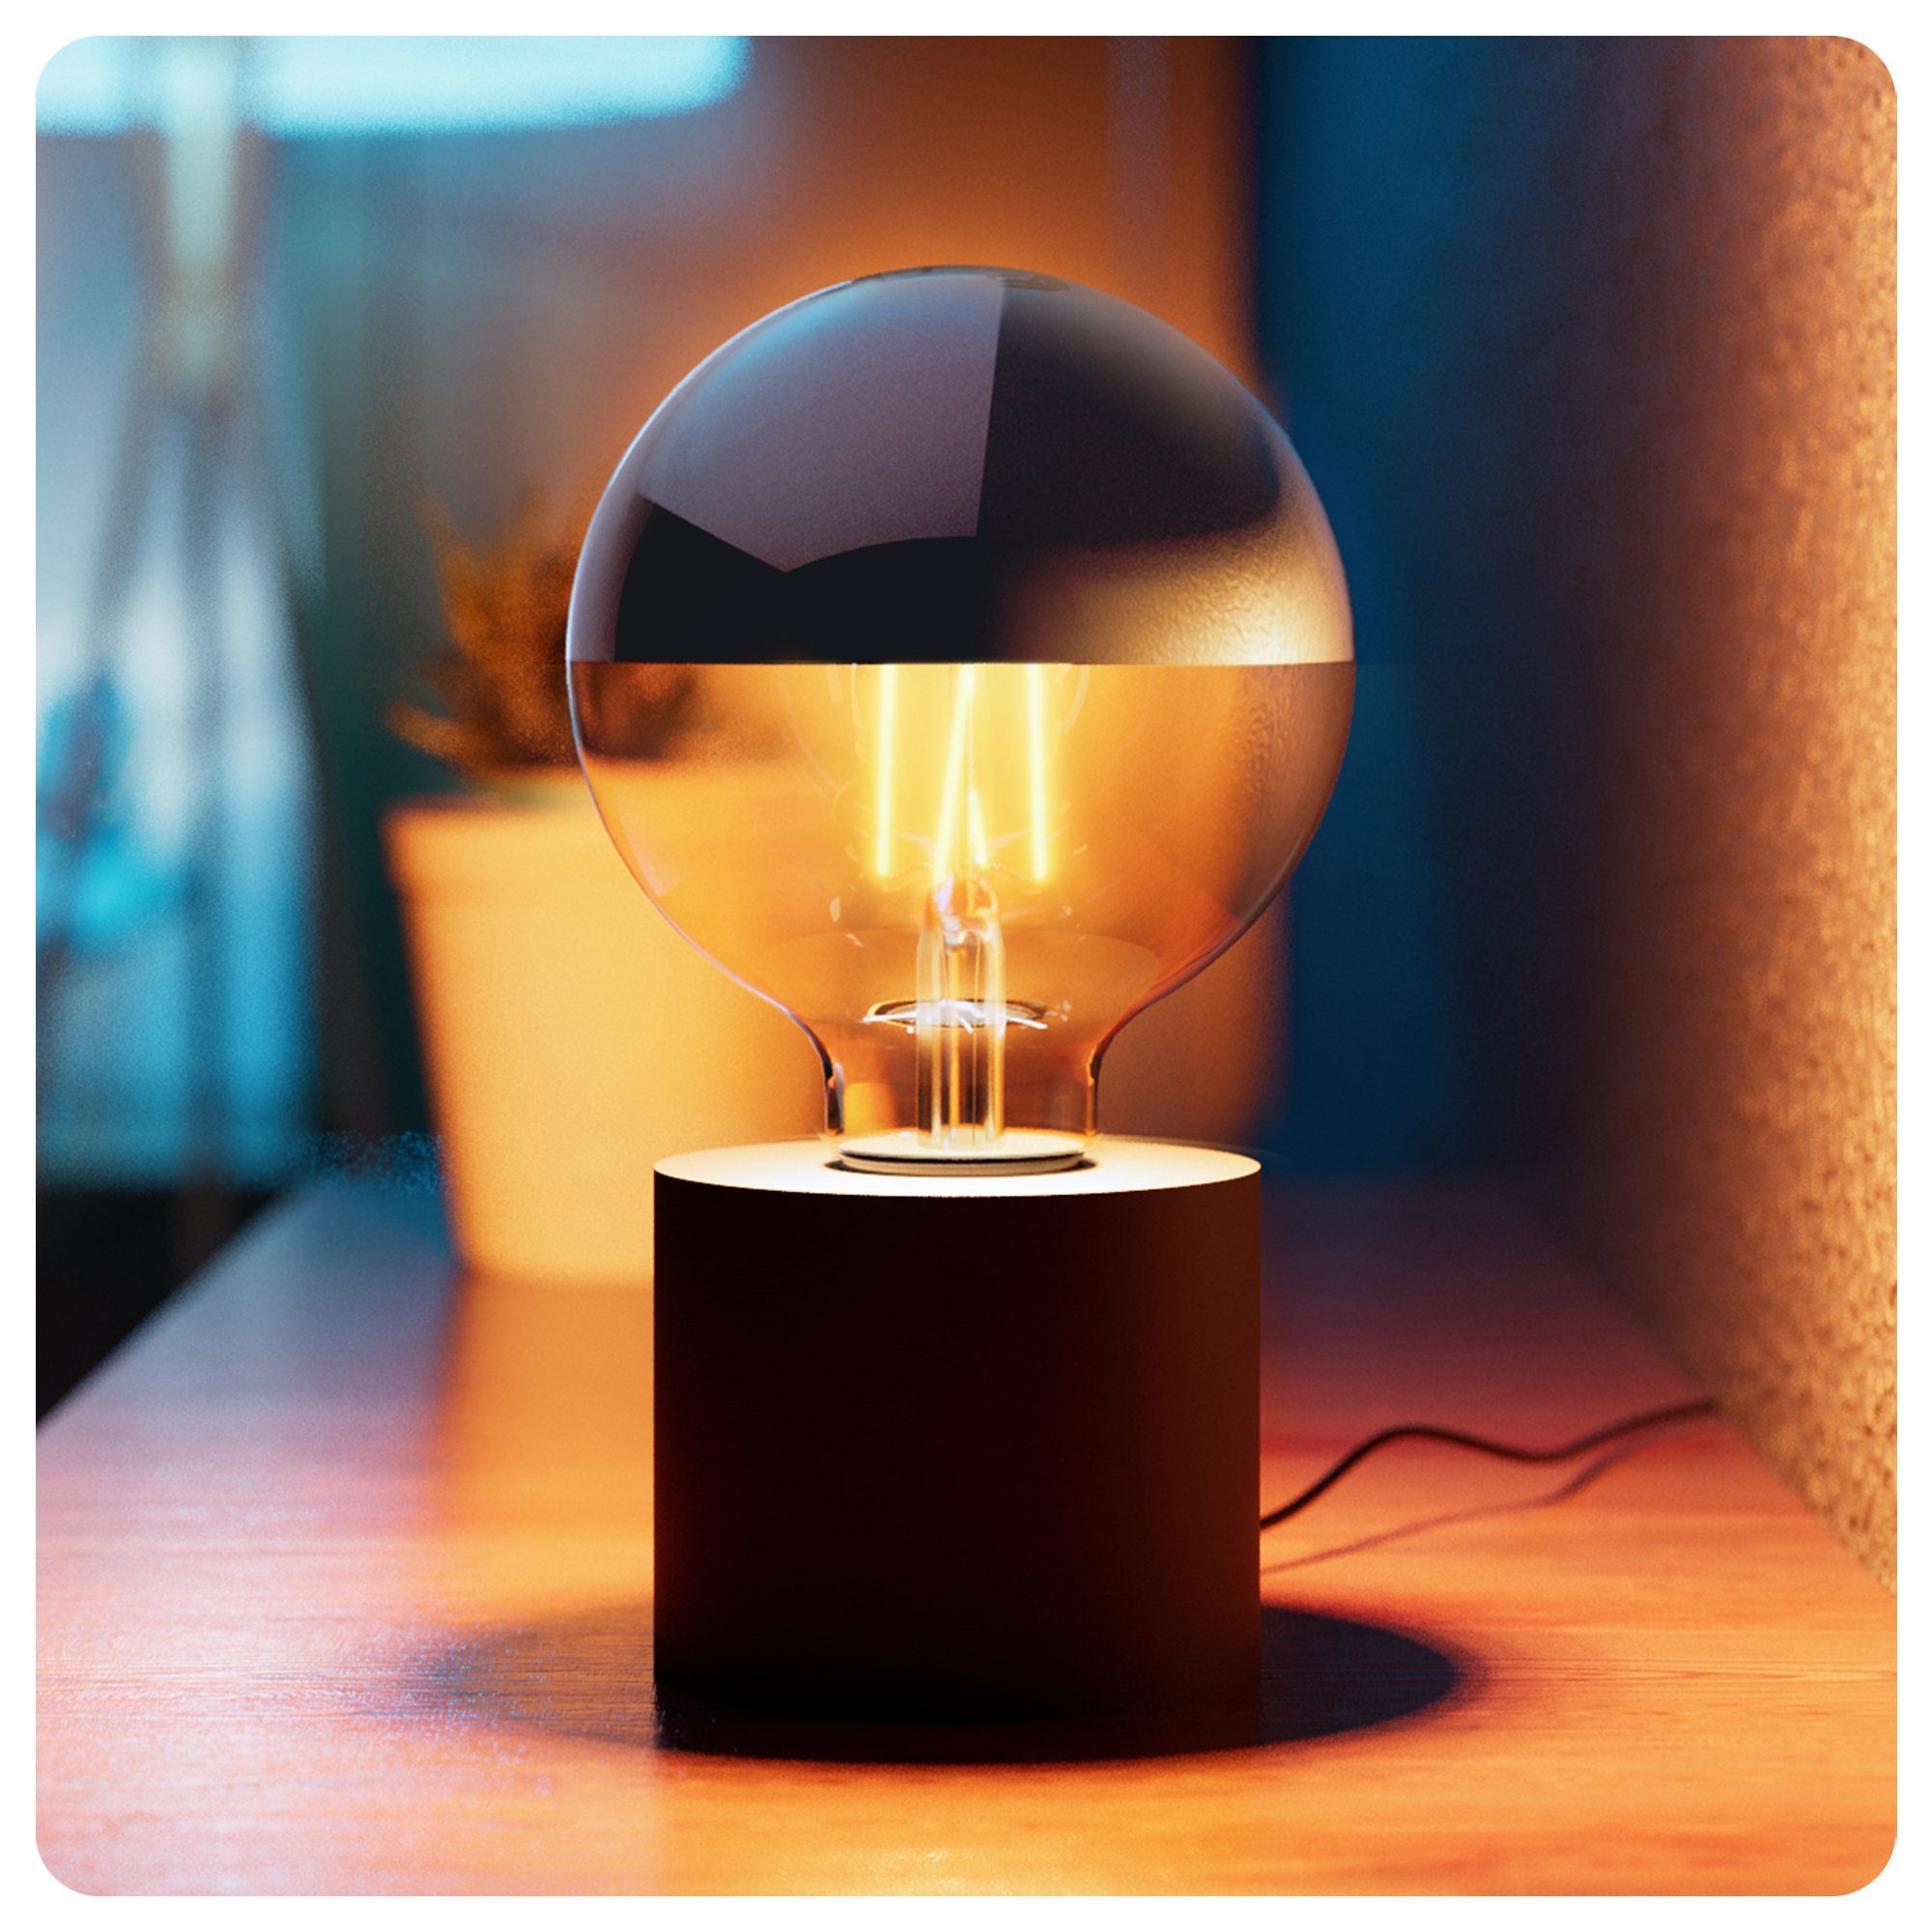 SSC-LUXon LED Bilderleuchte NAMBI Design Tischleuchte schwarz mit Spiegelkopf LED E27 Globe, Warmweiß | Bilderleuchten